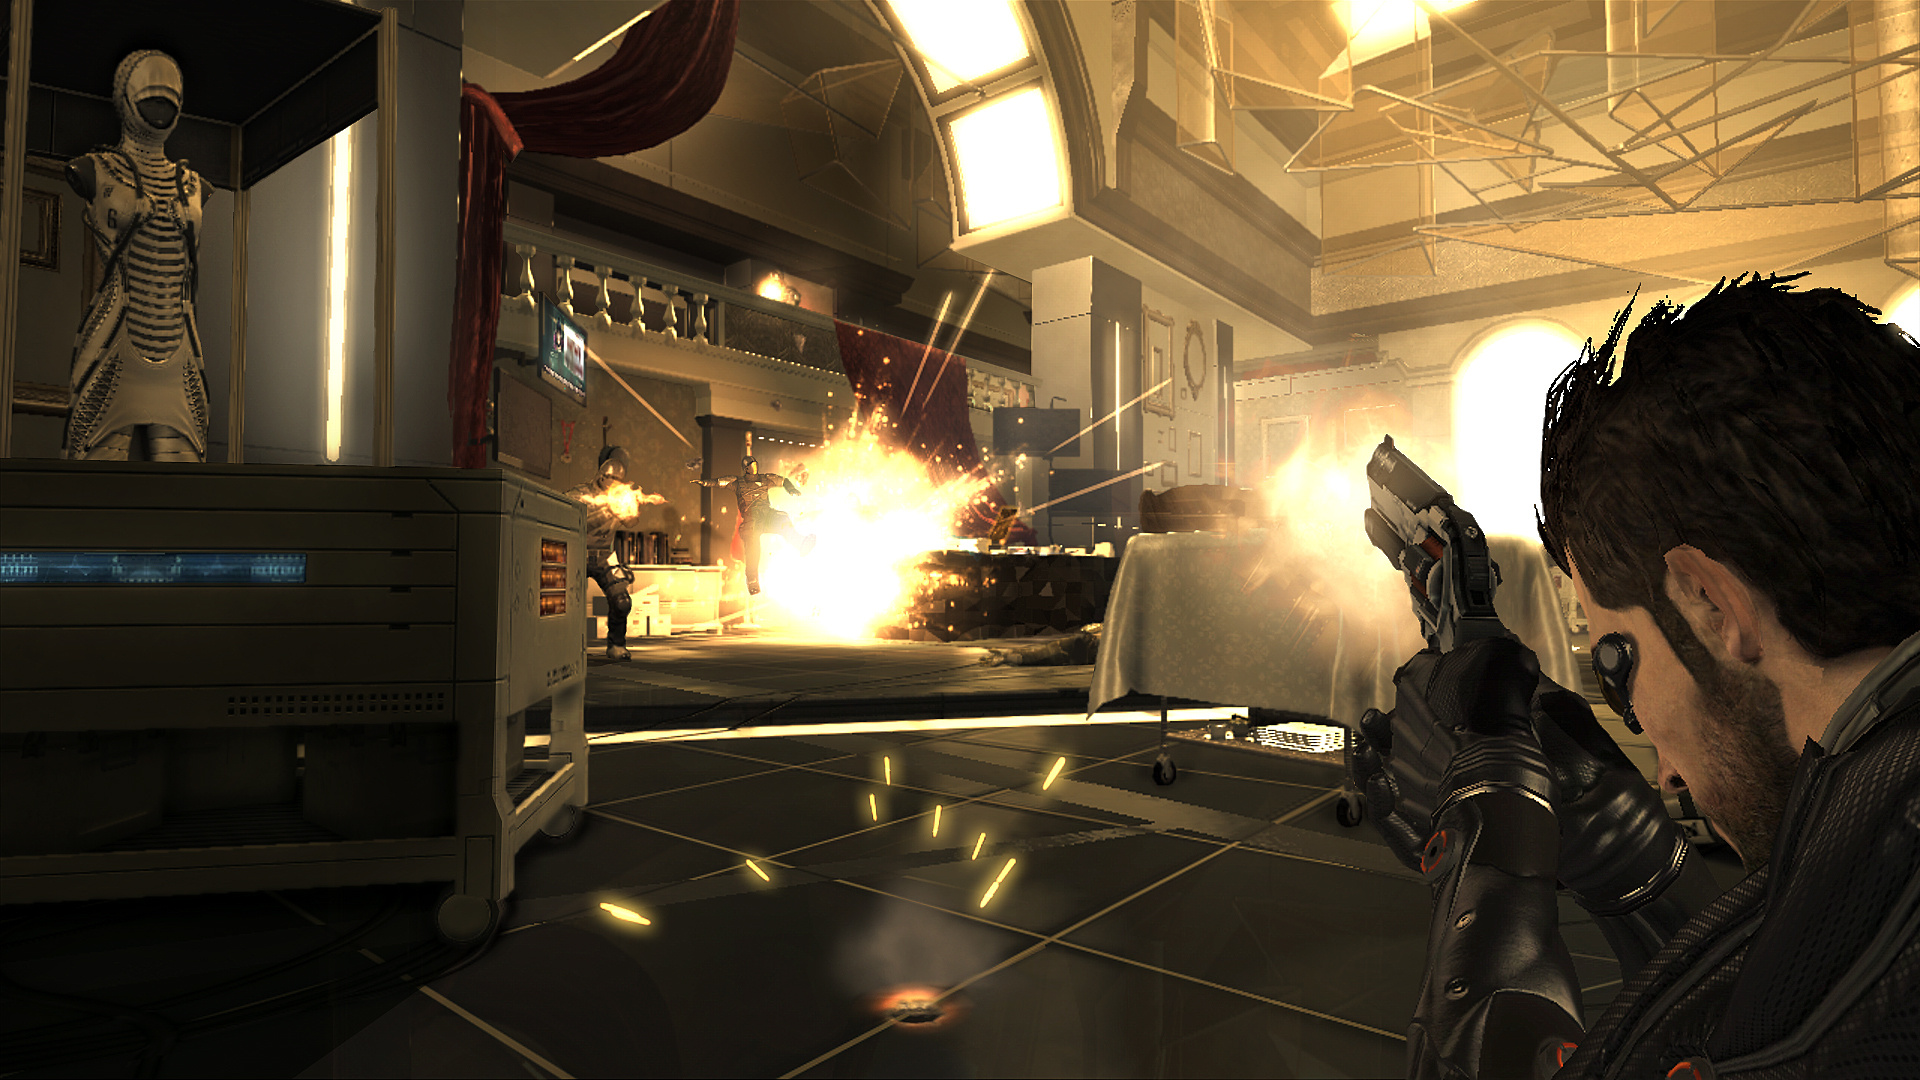 Deus Ex: Human Revolution - Directors Cut for PC Reviews